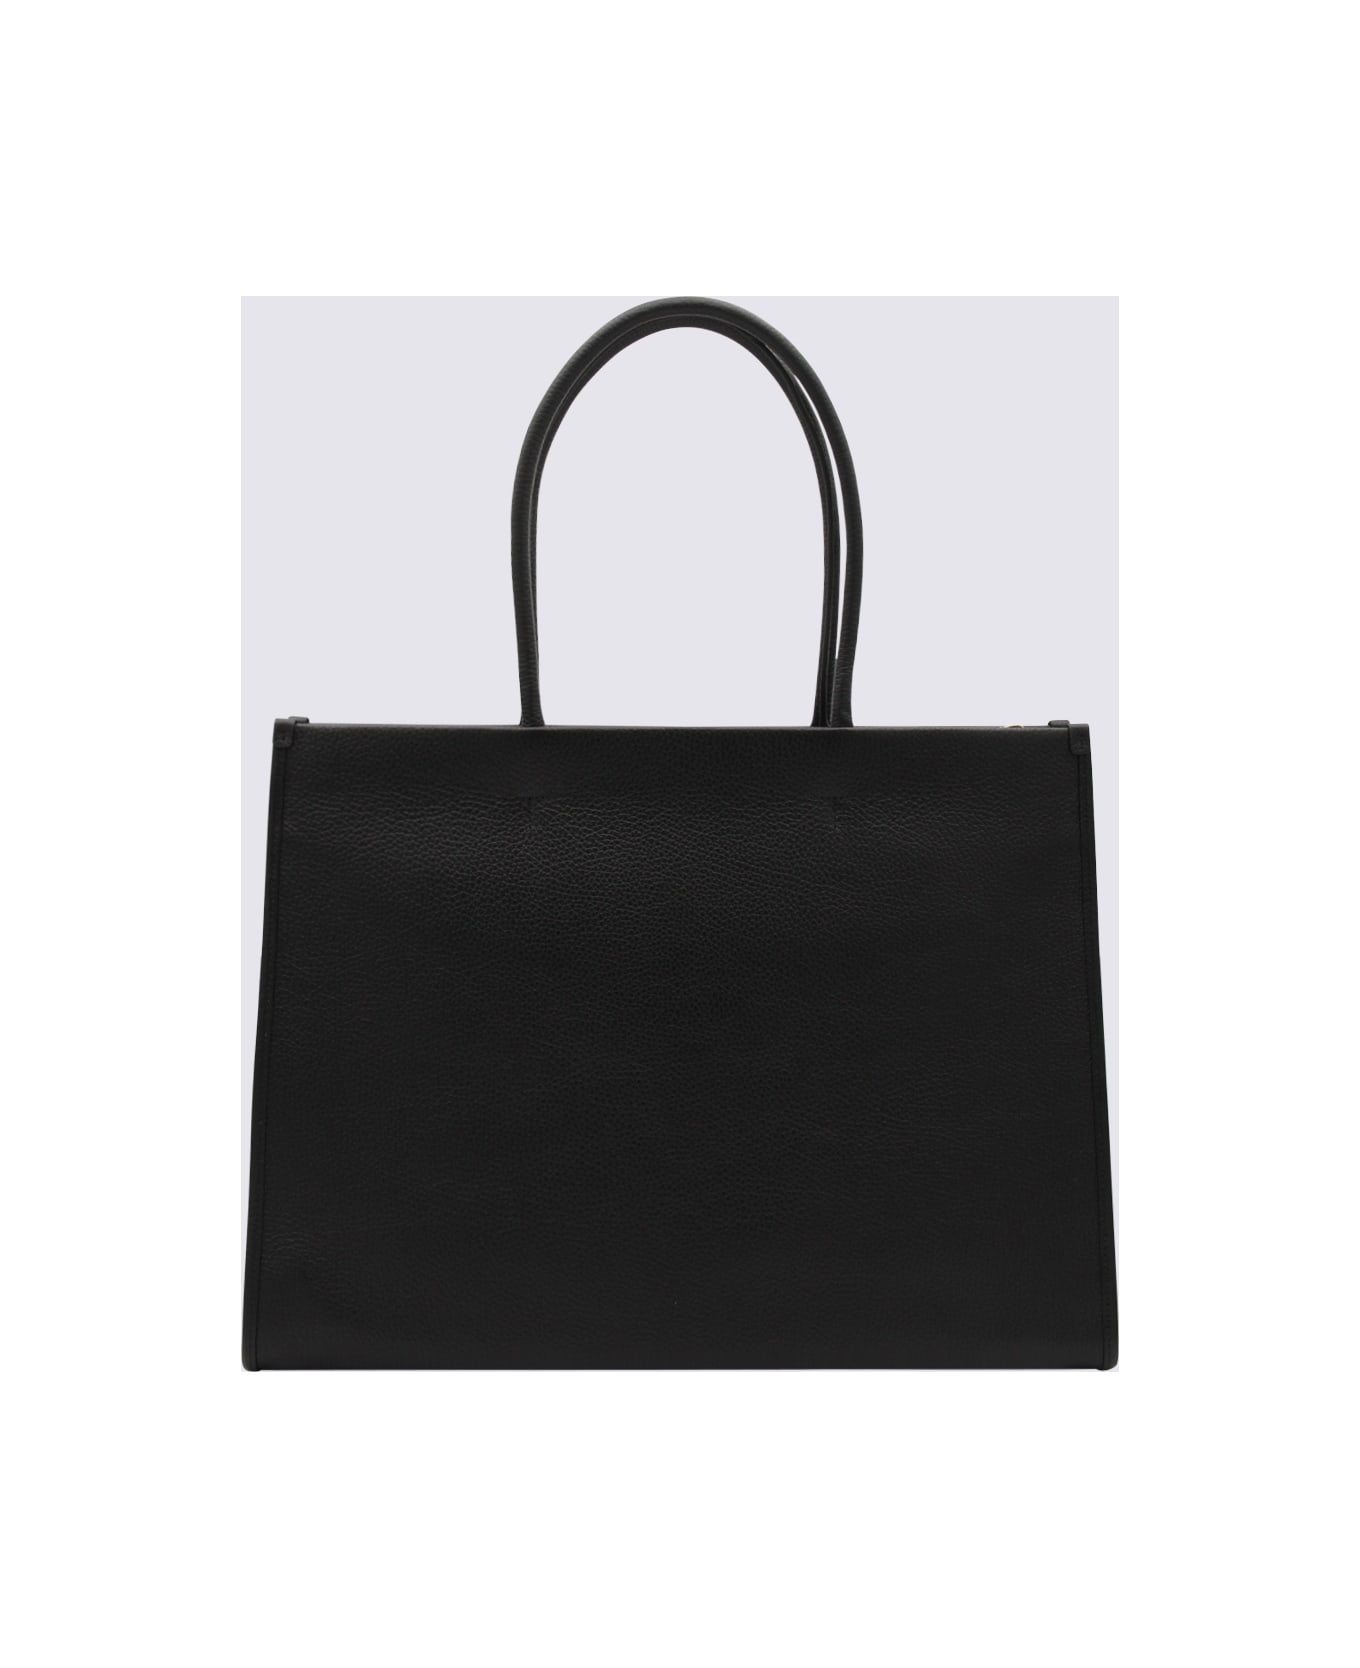 Furla Black Lether Opportunity Tote Bag - Black